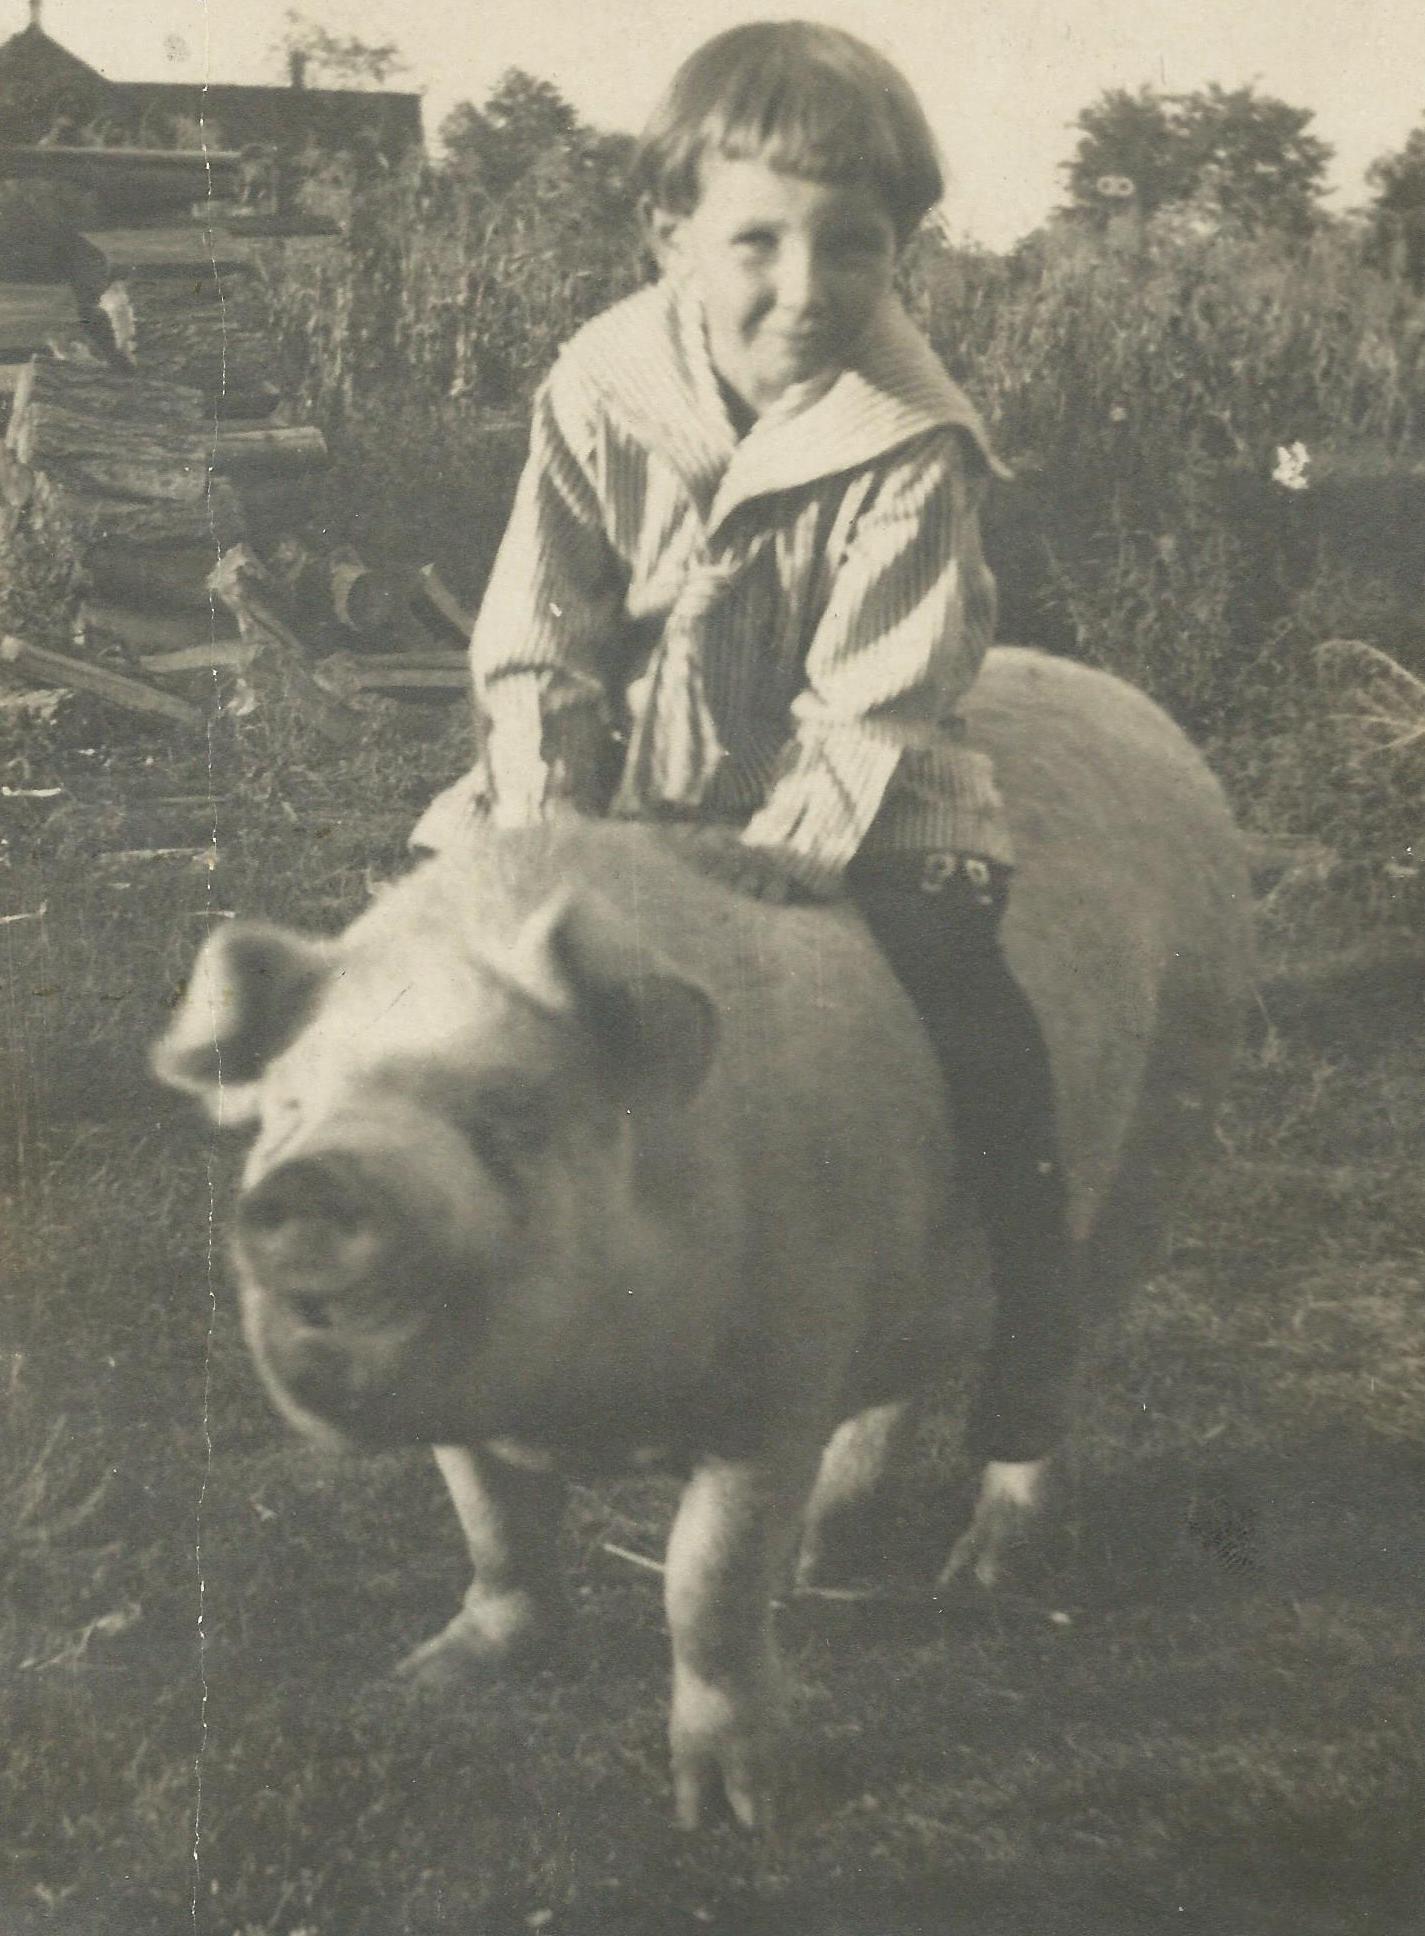 James McNitt riding a pig